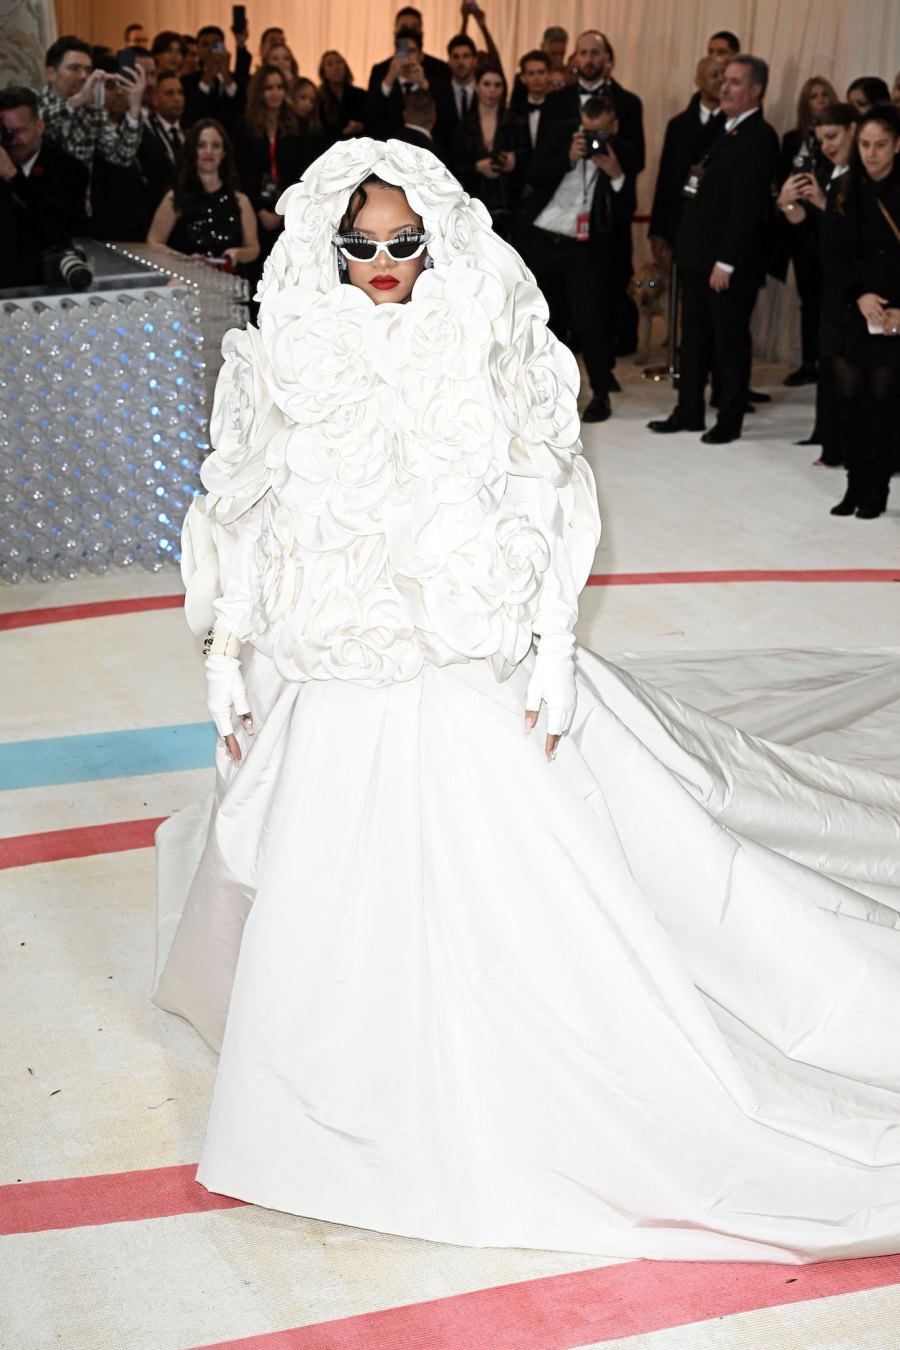 Rihanna Flashes Her Boobs In Sheer Dress At CFDA Fashion Awards (NSFW PICS)